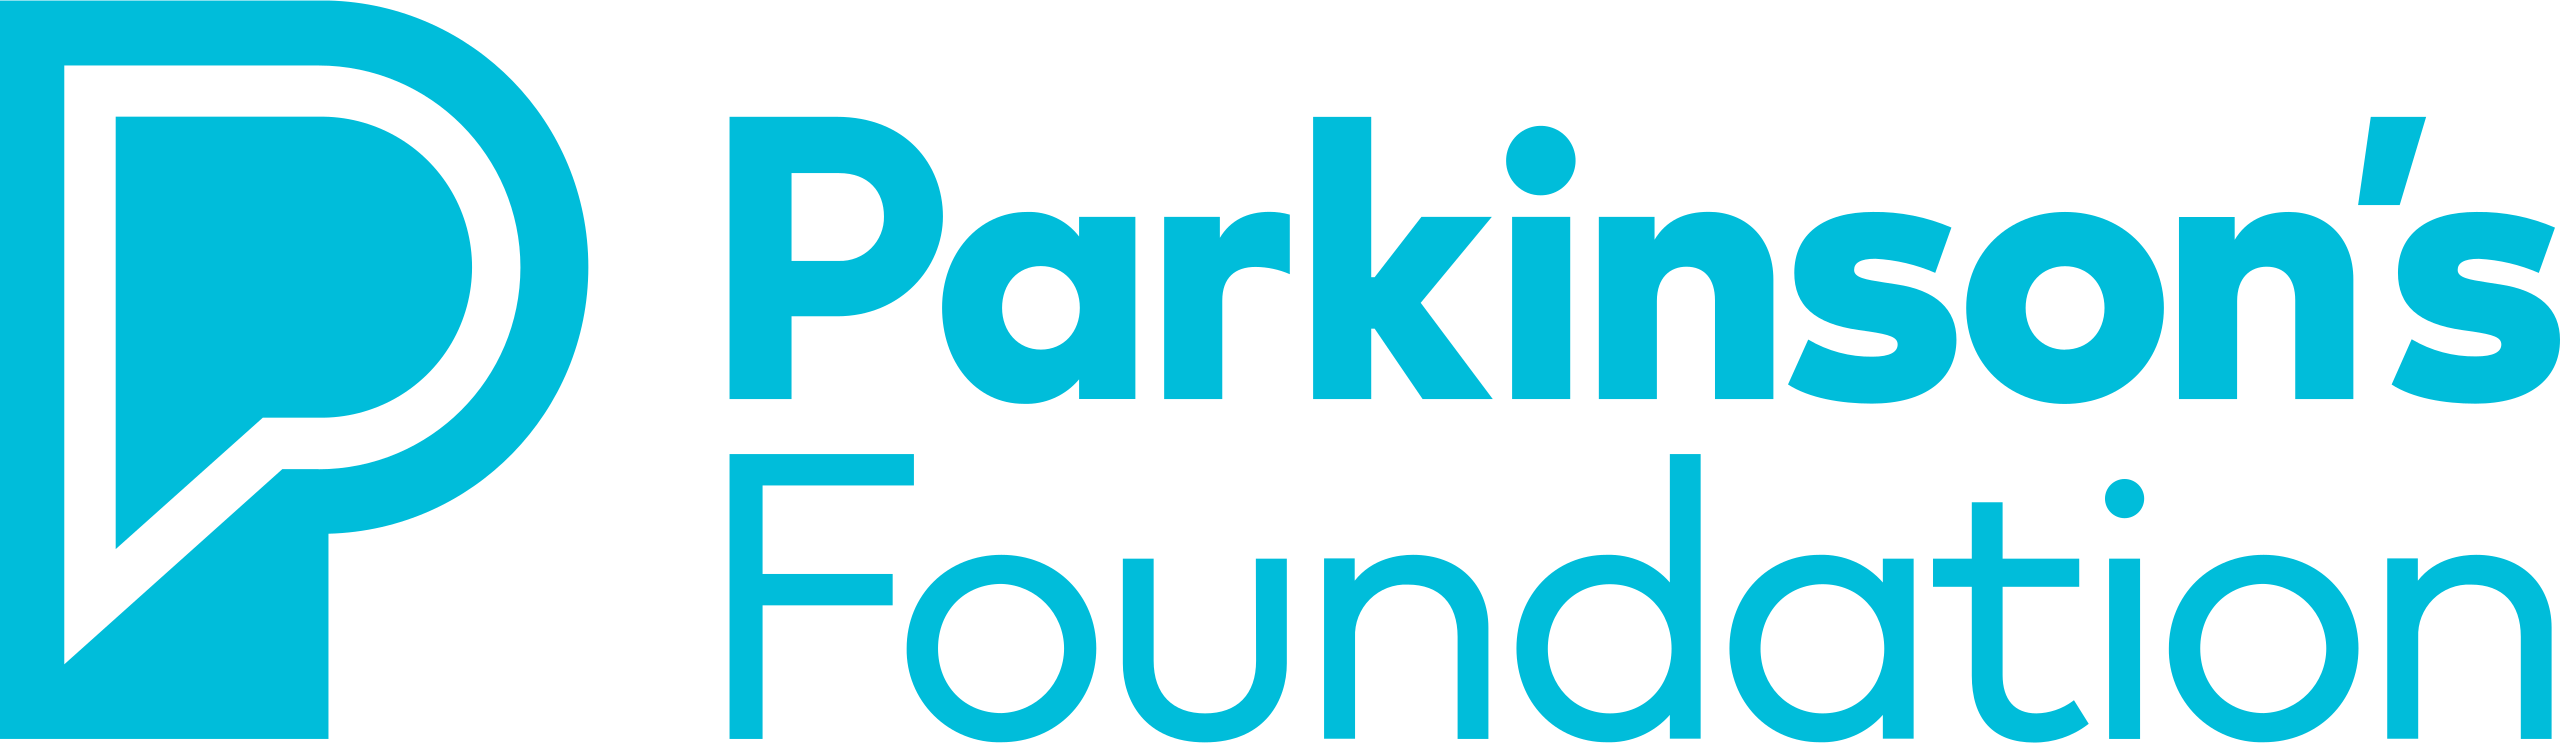 2560px-Parkinson's_Foundation_logo.svg